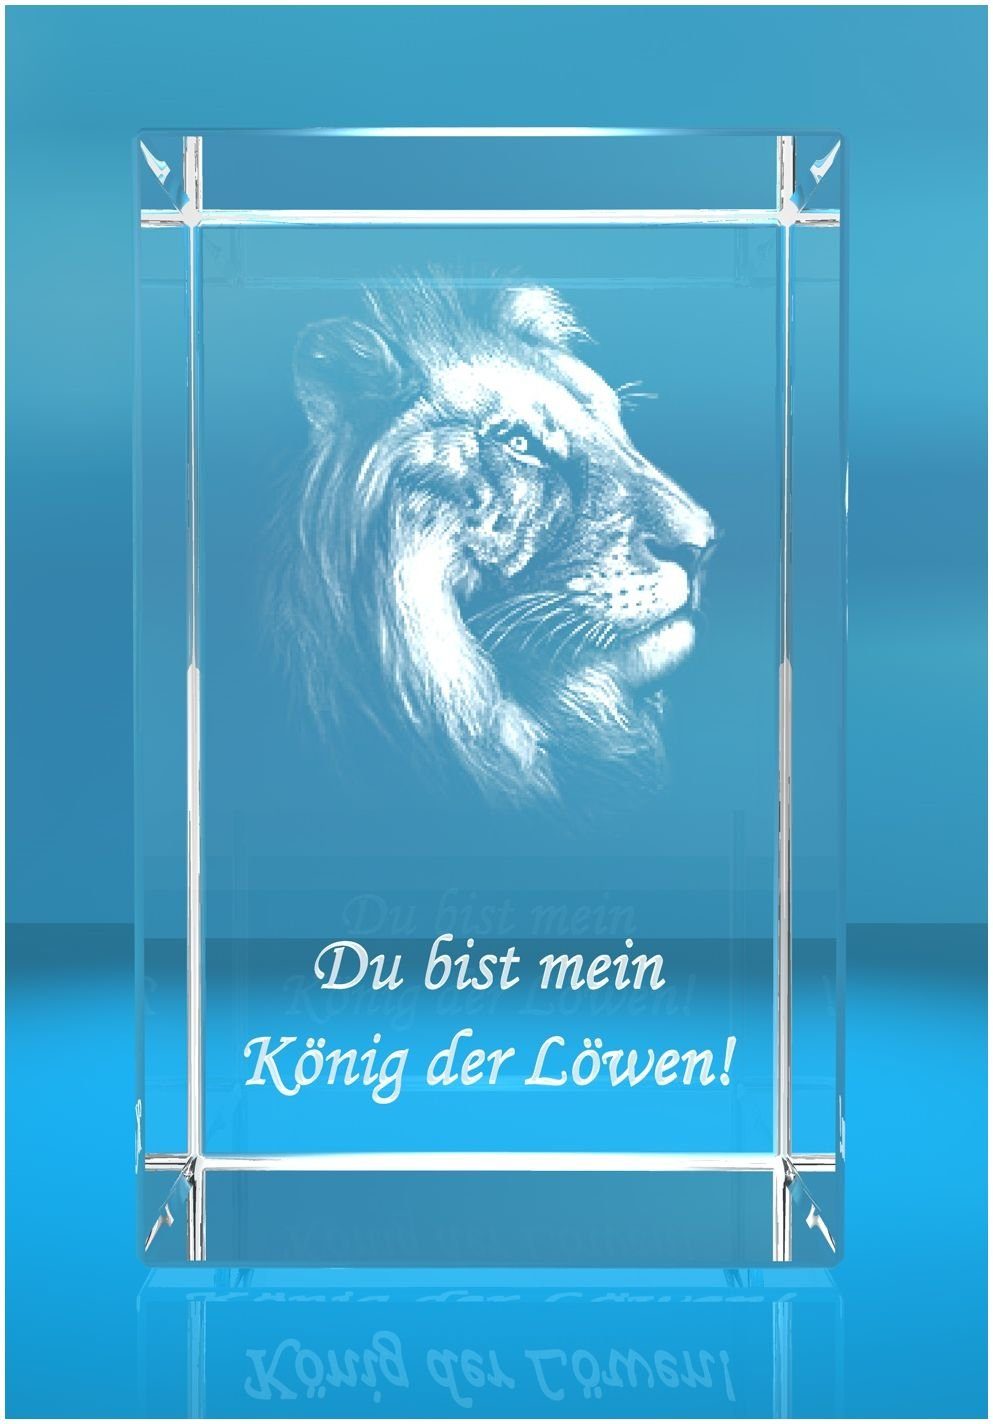 mein Hochwertige Glasquader Motiv: Familienbetrieb bist Made der Germany, 3D VIP-LASER Geschenkbox, Löwen, Dekofigur in Löwenkopf Du König